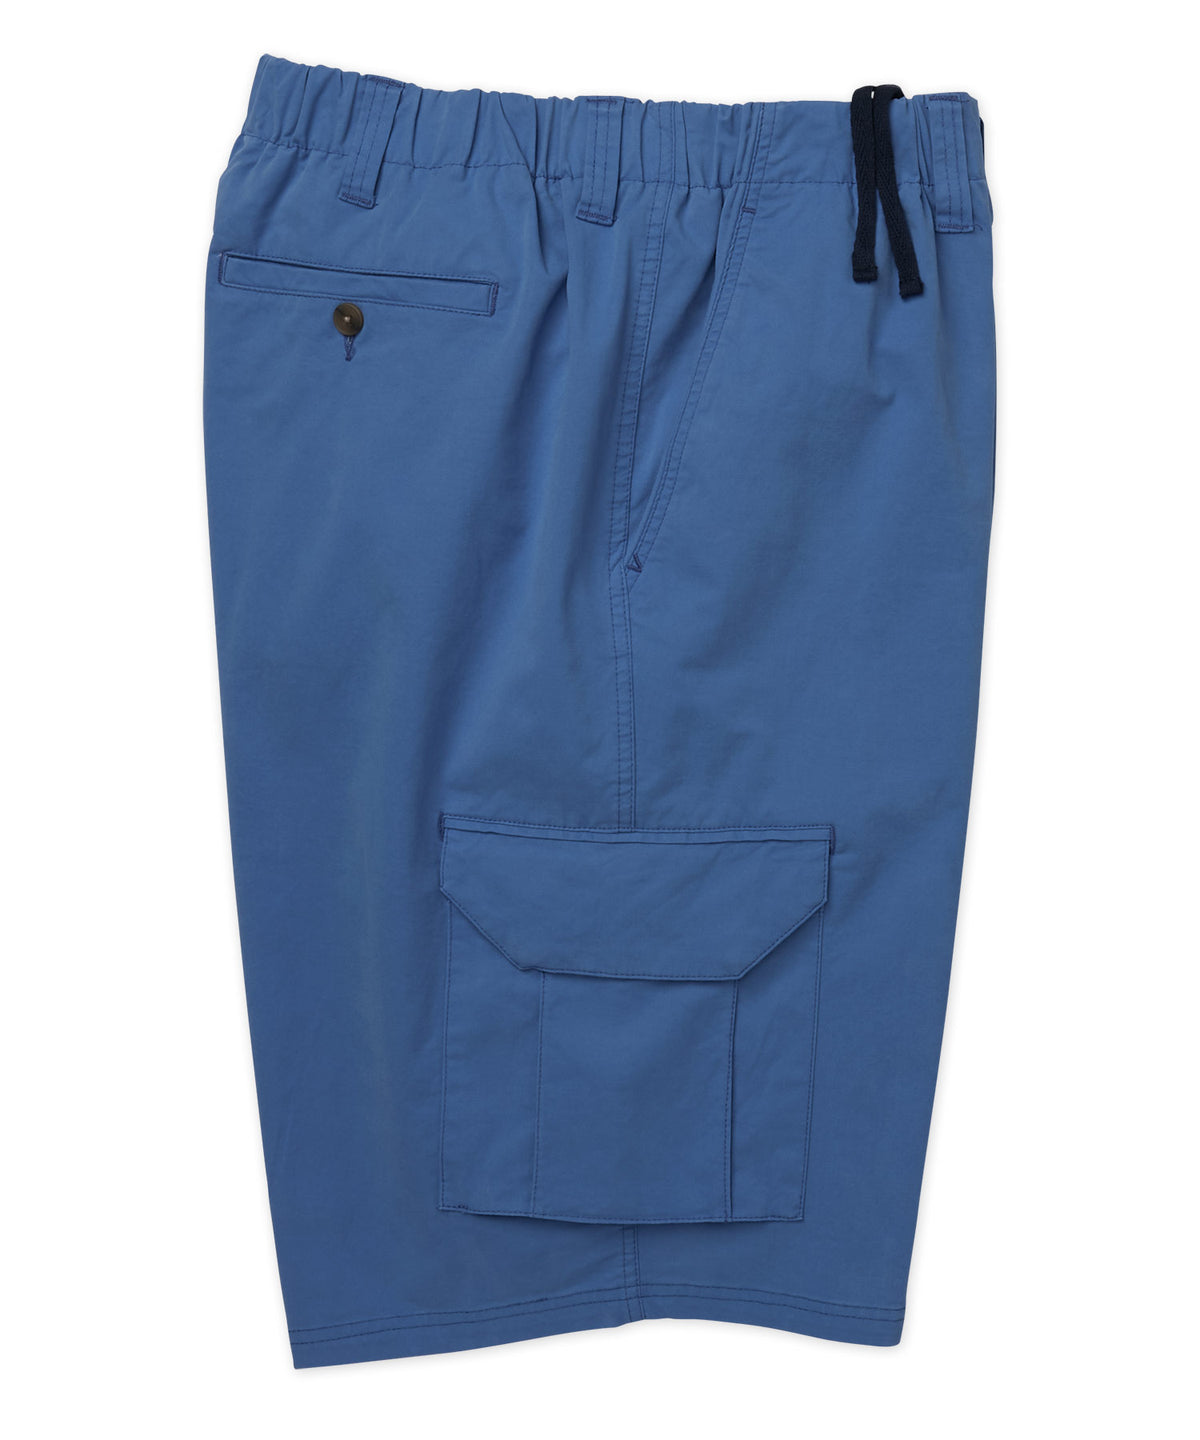 Pantaloncini cargo elasticizzati in vita elasticizzata in twill elasticizzato Westport 1989, Men's Big & Tall